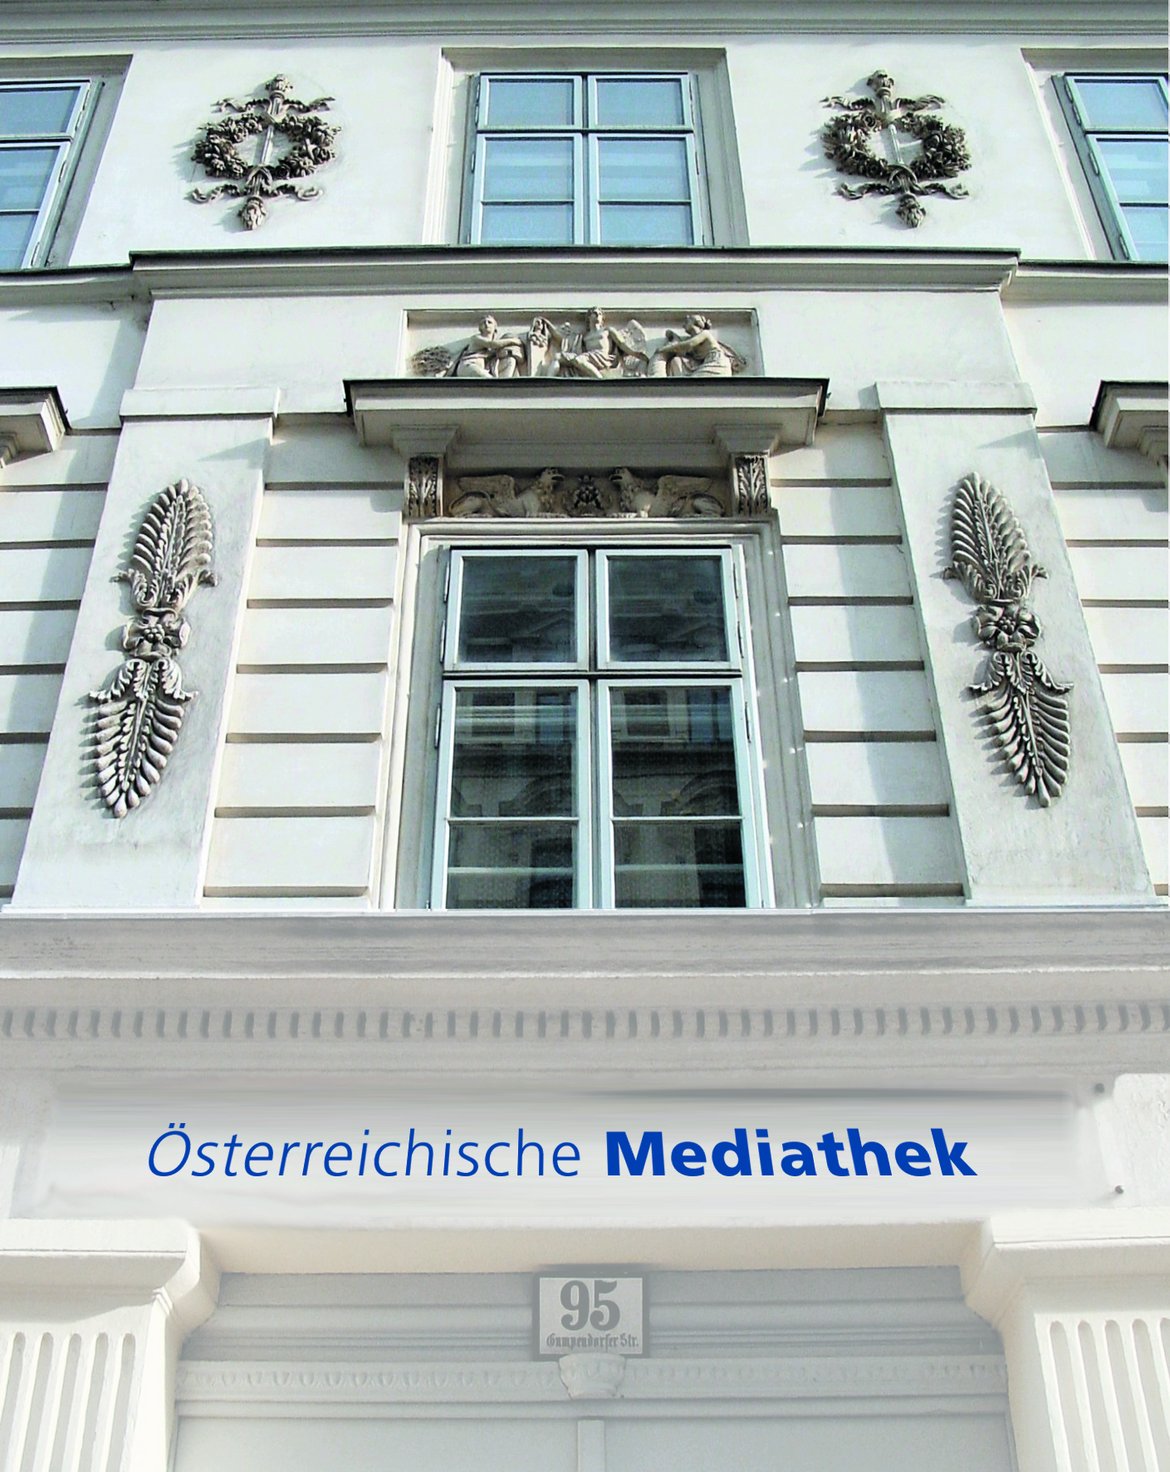 Der Eingang Gumpendorfer Straße 95.
Das sogenannte Marchettischlössl.
Hier befindet sich der Publikumsbetrieb der Österreichischen Mediathek.